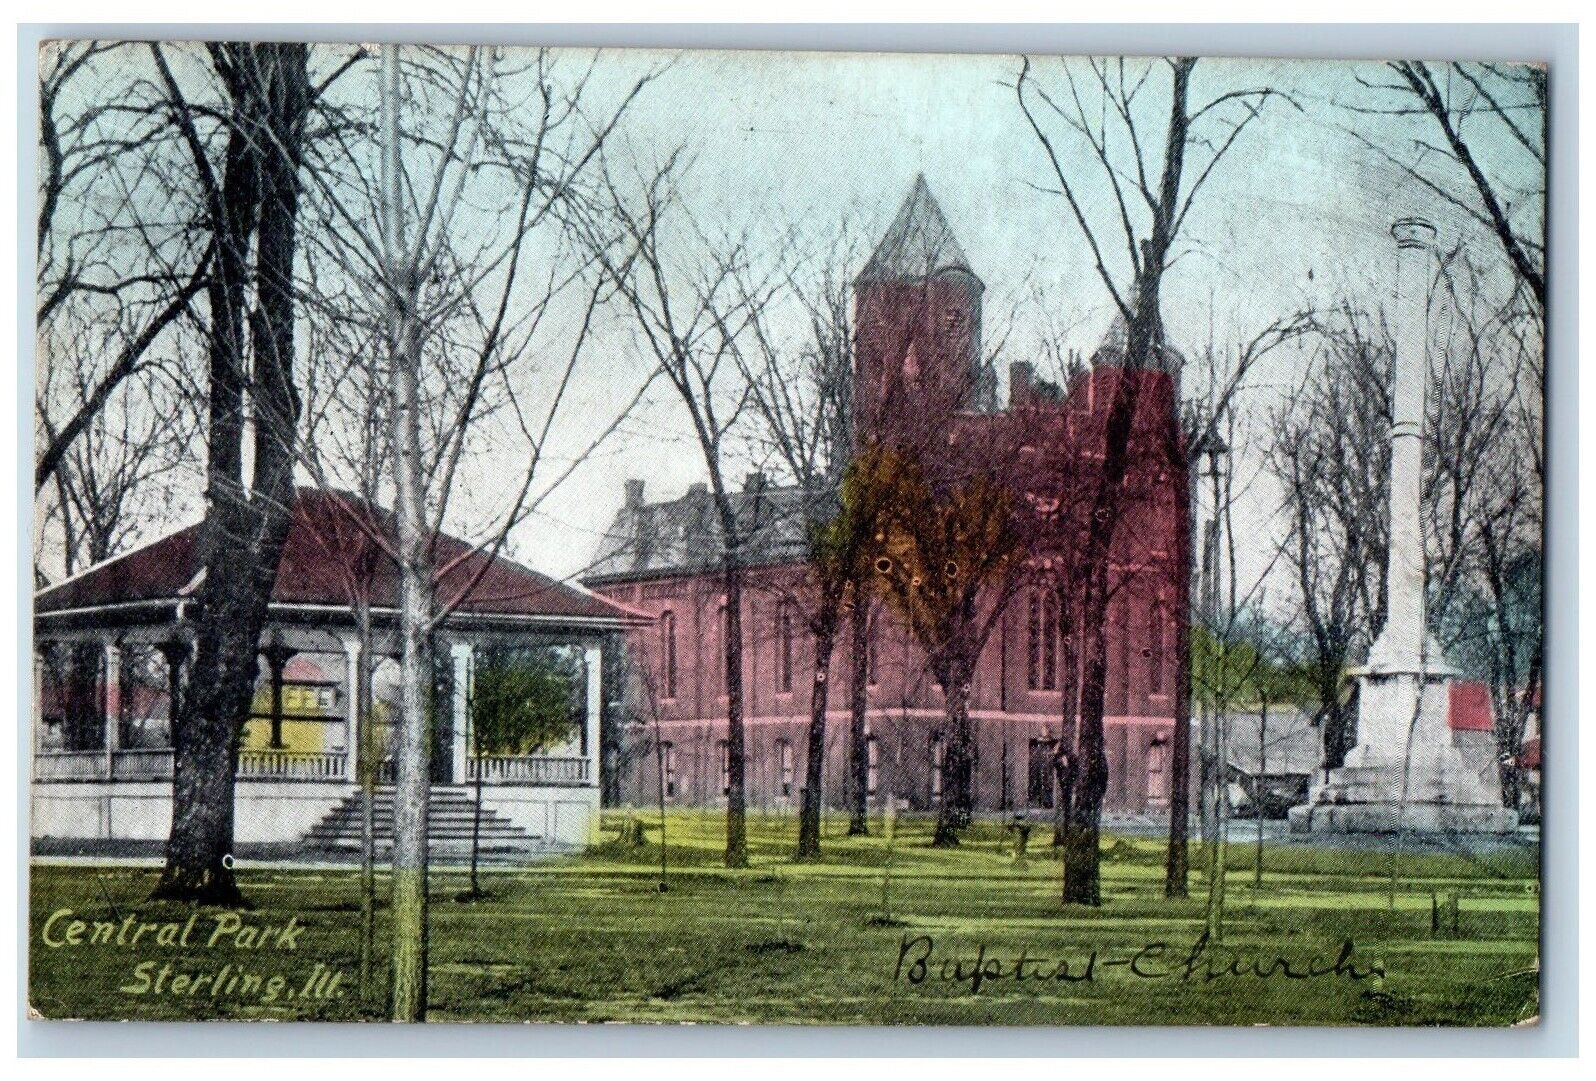 Sterling Illinois Postcard Central Park Exterior Building c1918 Vintage Antique